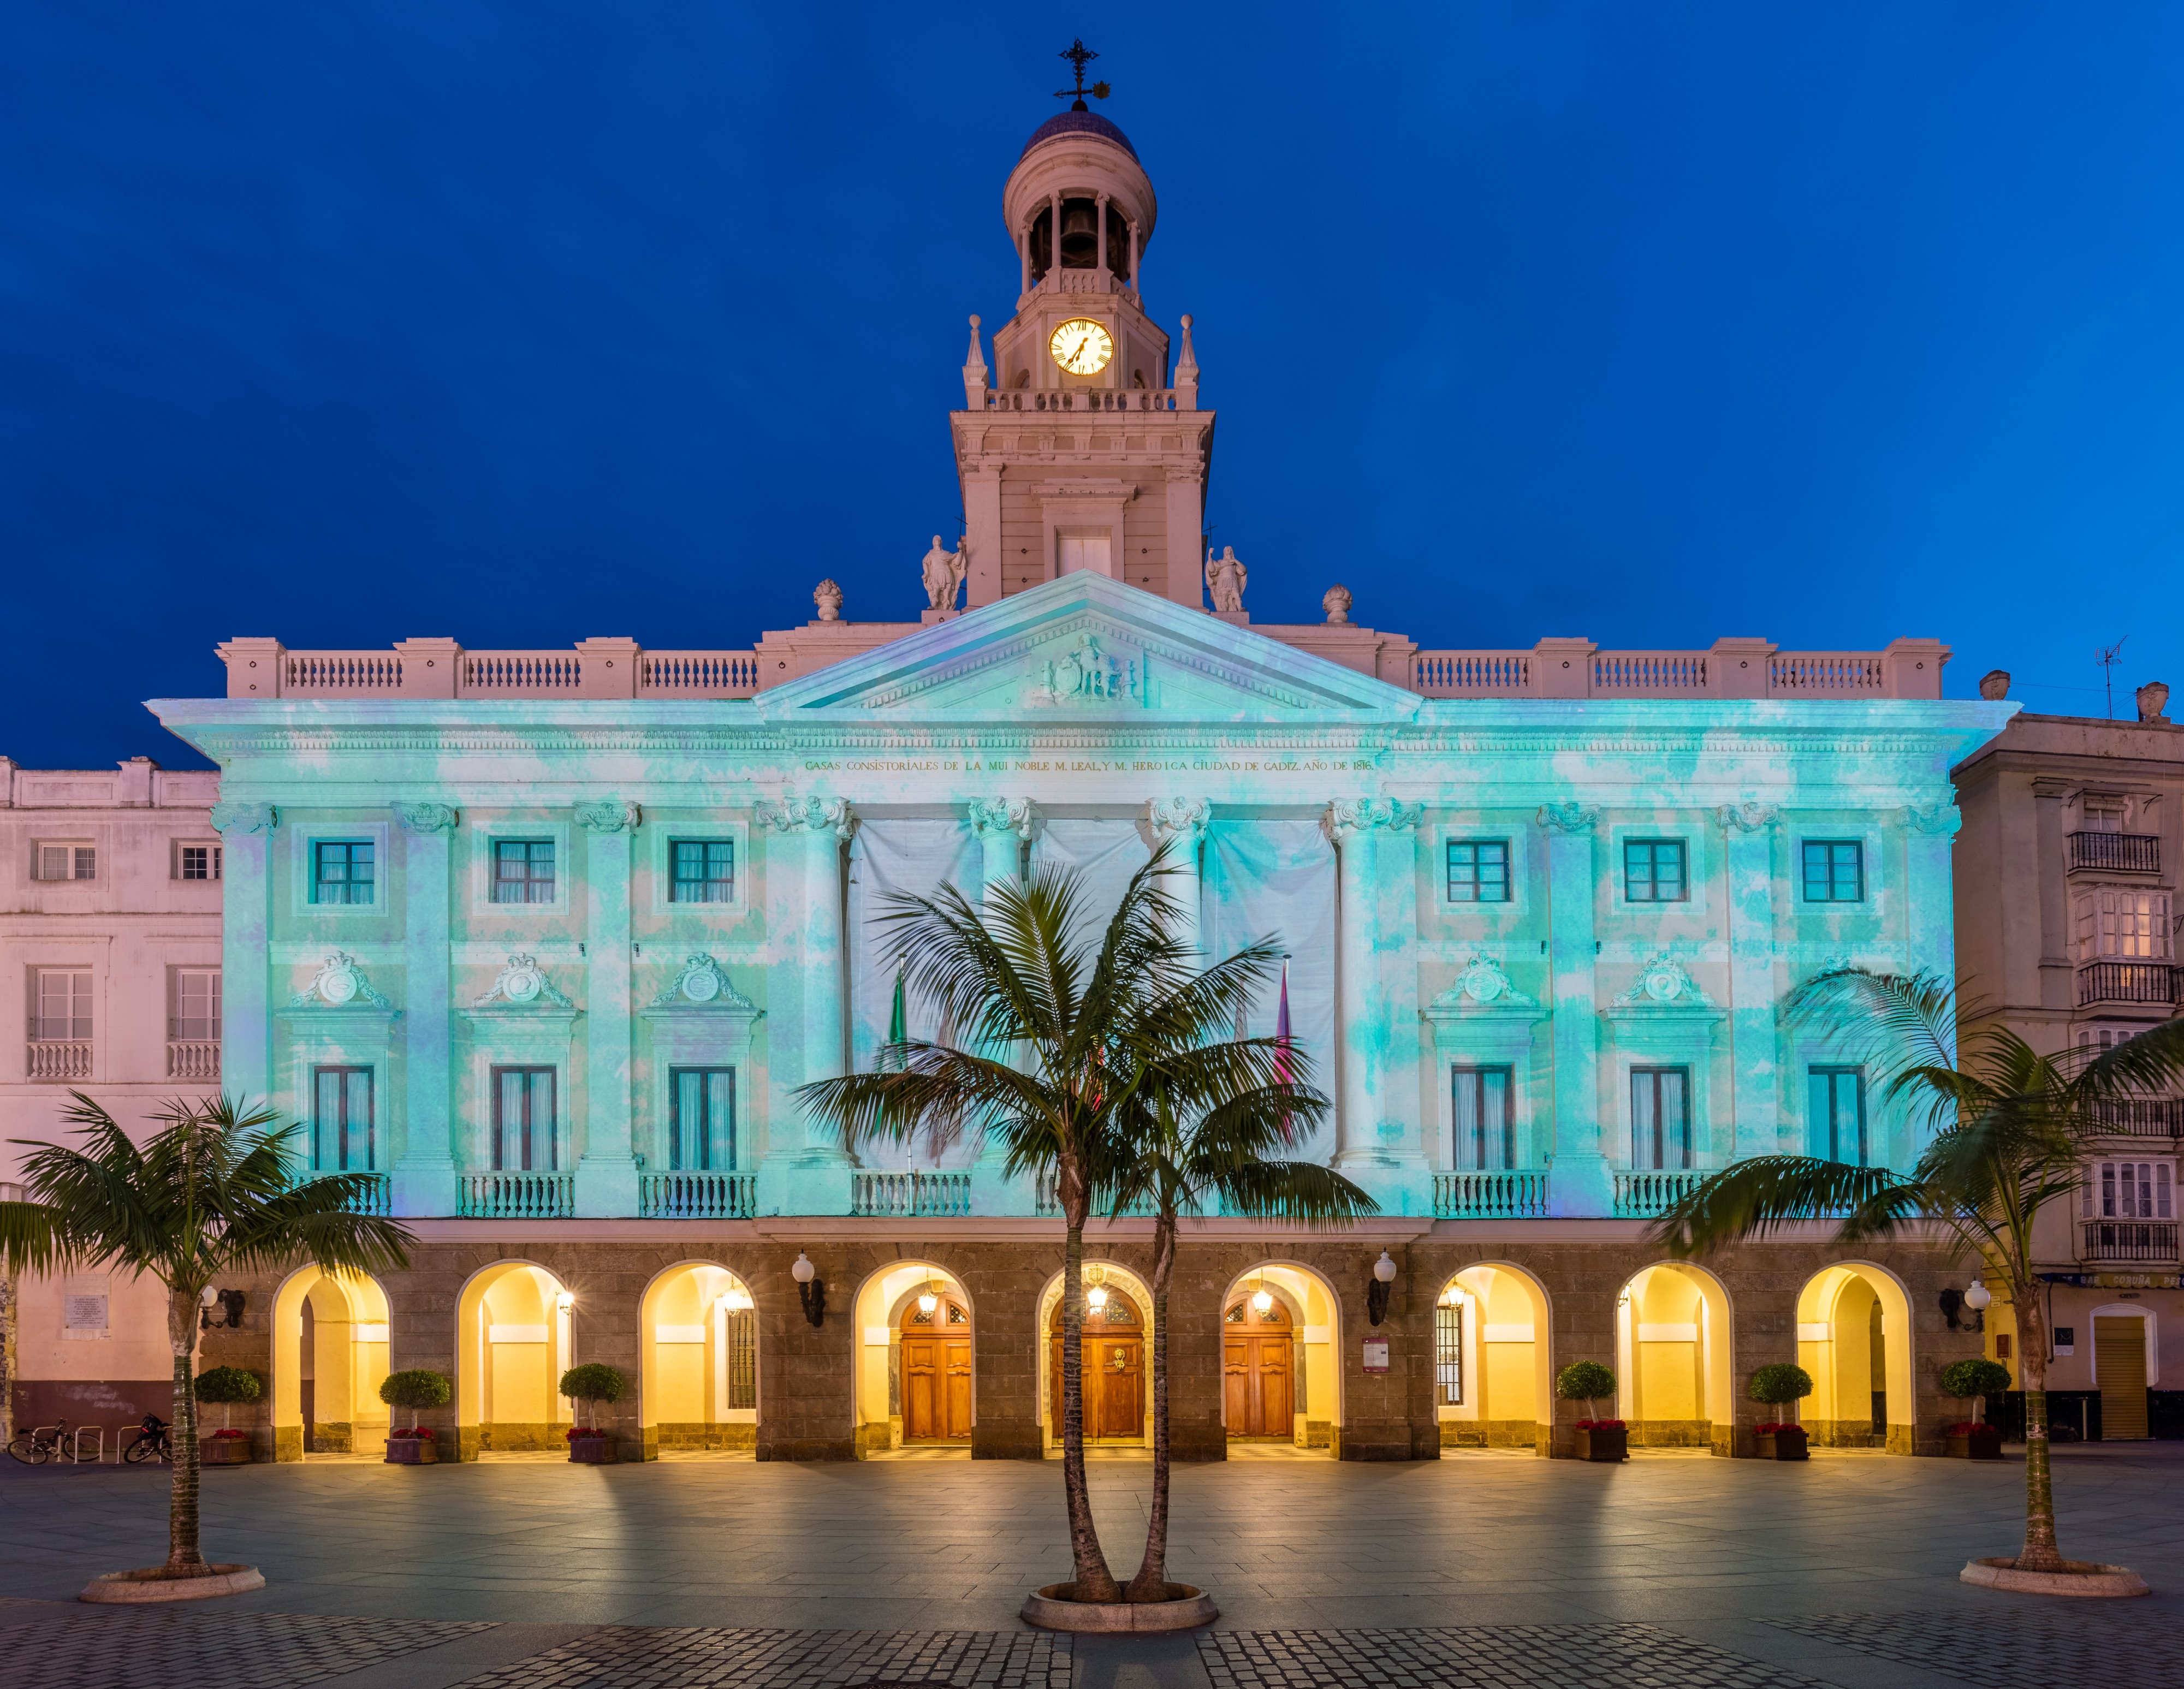 Ayuntamiento de Cádiz, España, 2015-12-08, DD 03-05 HDR